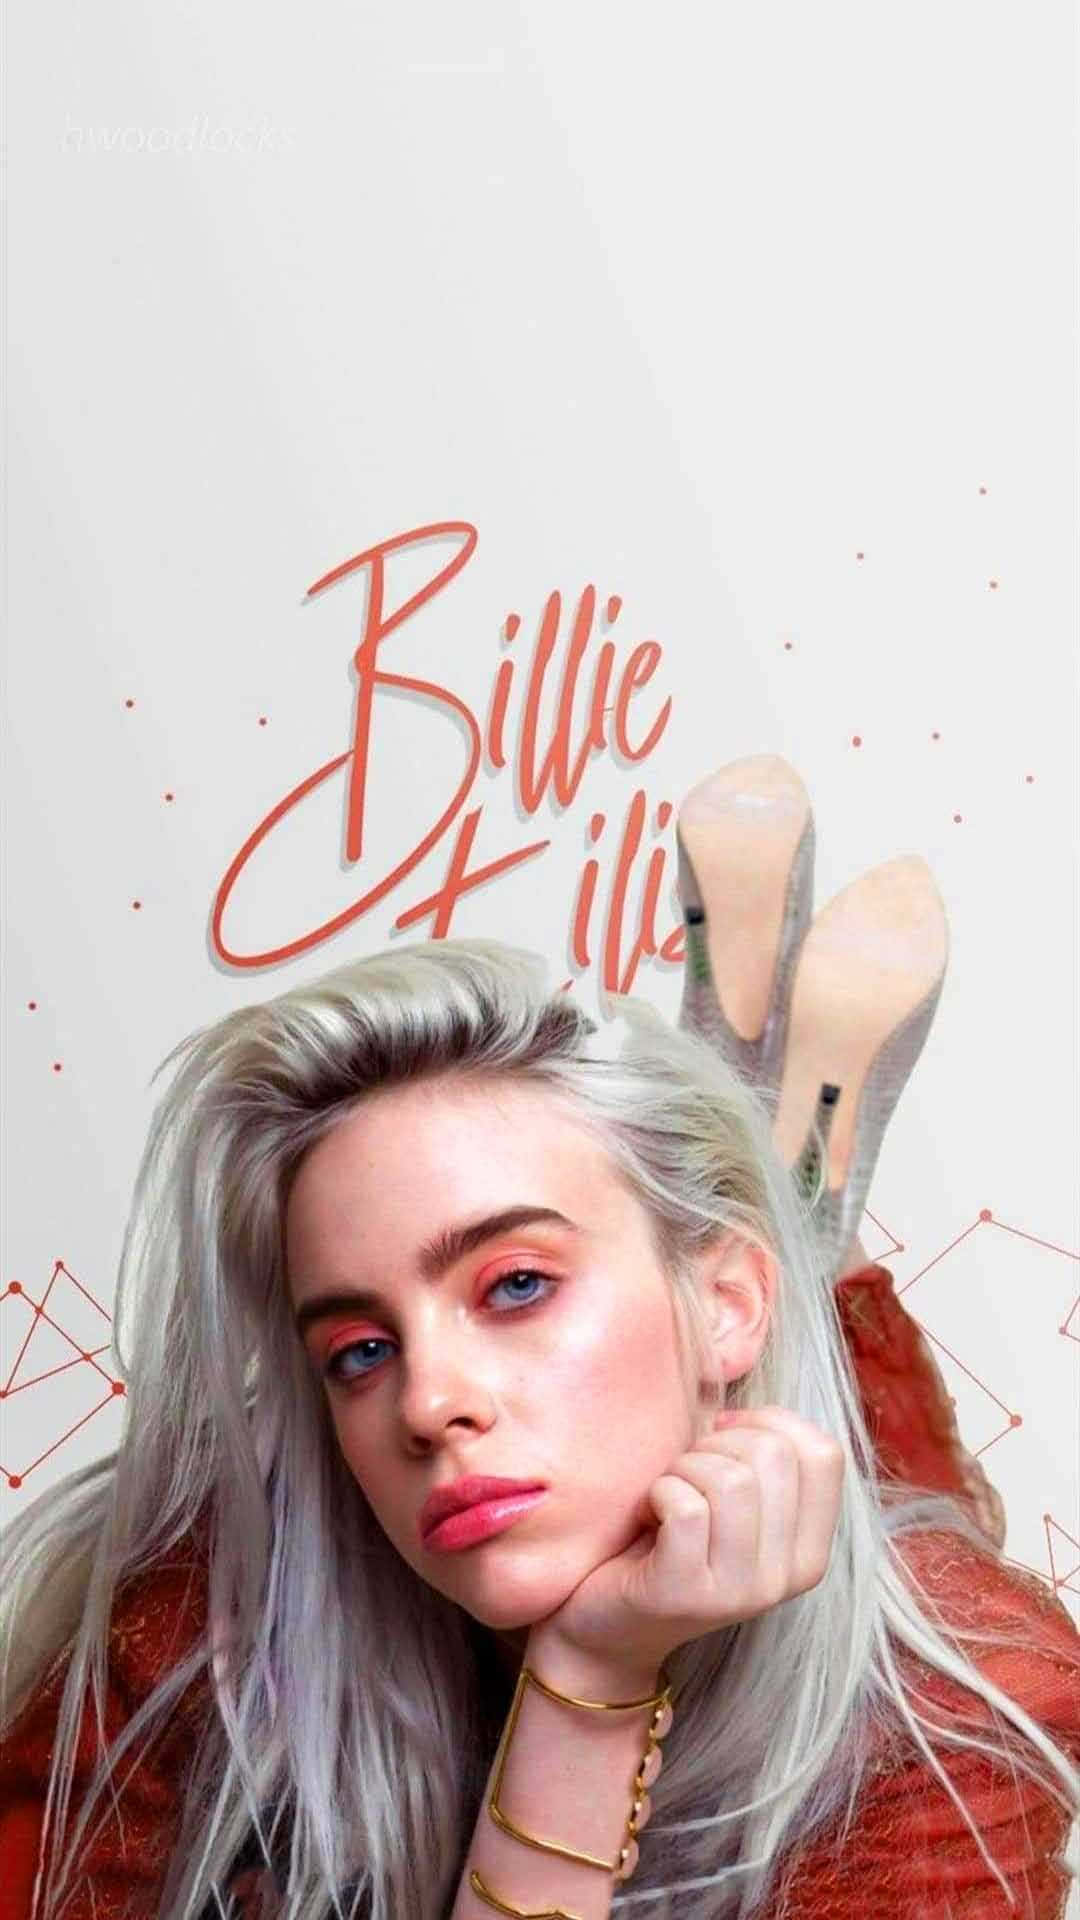 Billie Eilish 2021 Wallpaper